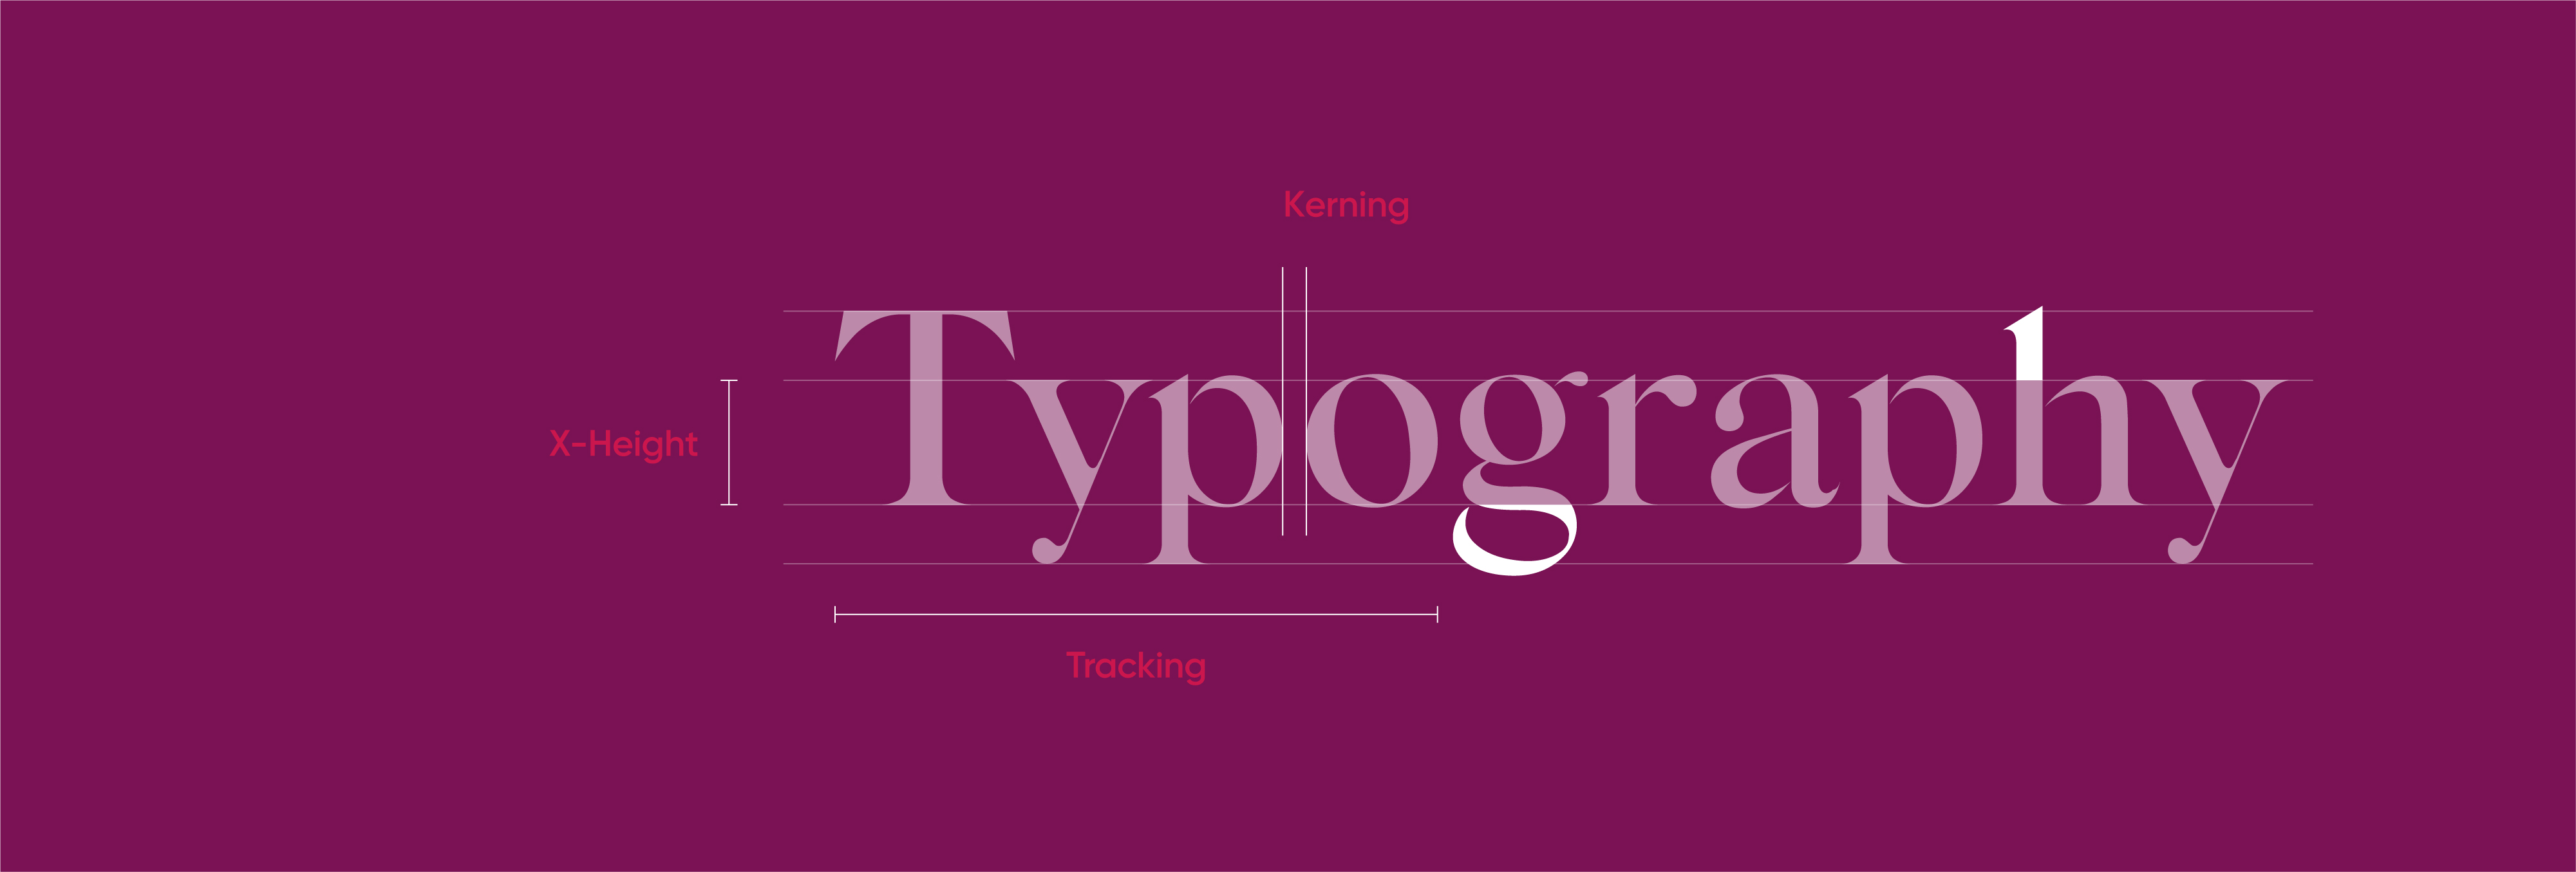 Thiết kế UI: Những yếu tố cơ bản trong Typography những "tay mơ" cần biết